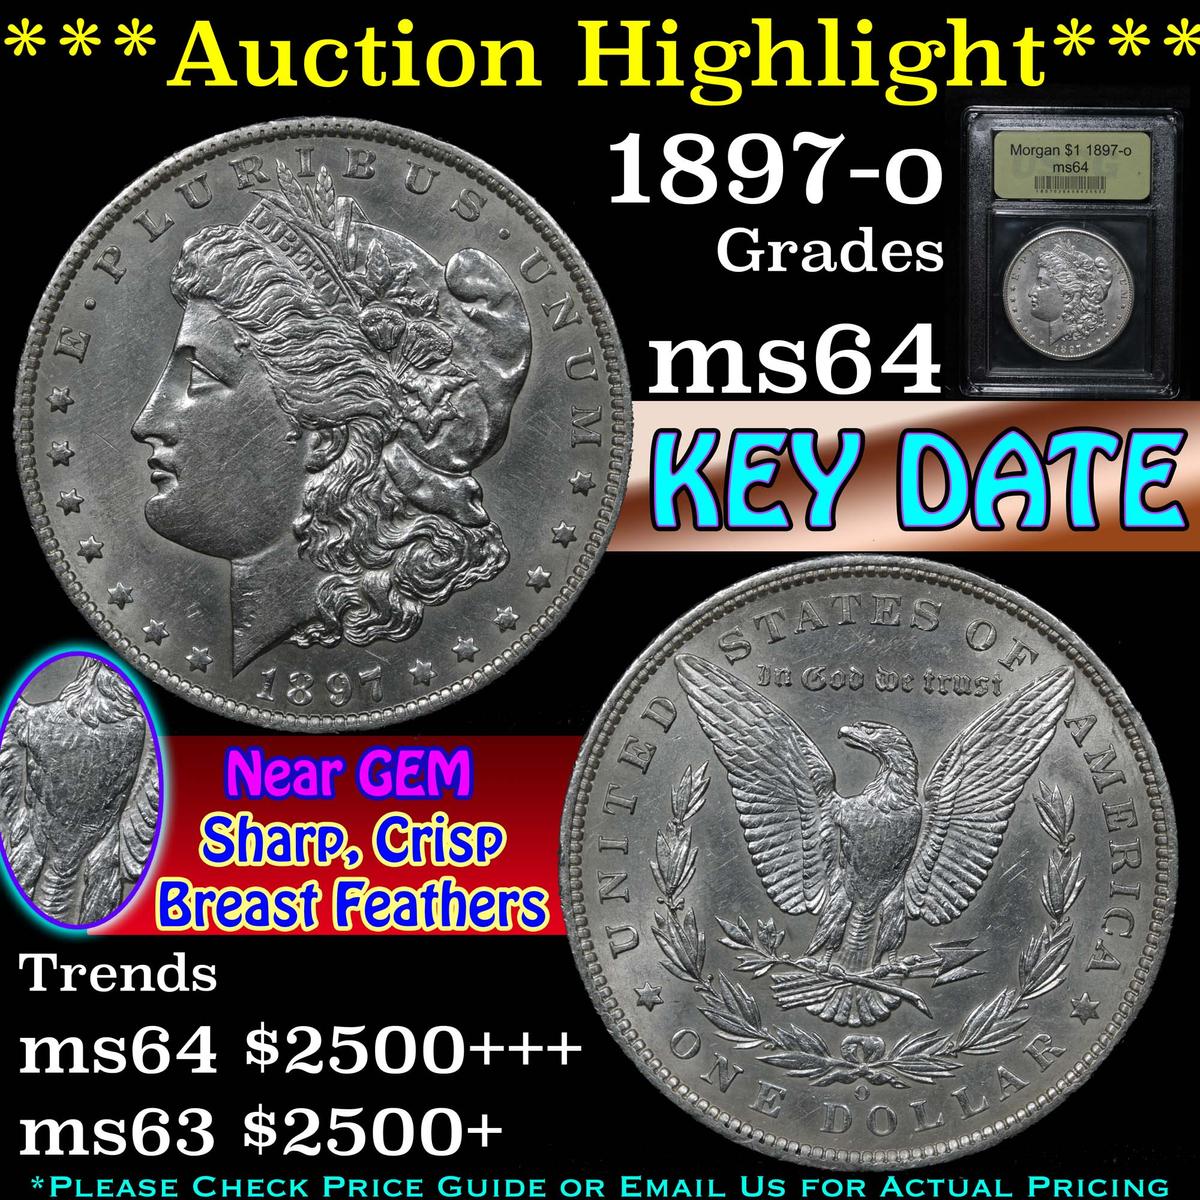 ***Auction Highlight*** 1897-o Morgan Dollar $1 Graded Choice Unc By USCG (fc)